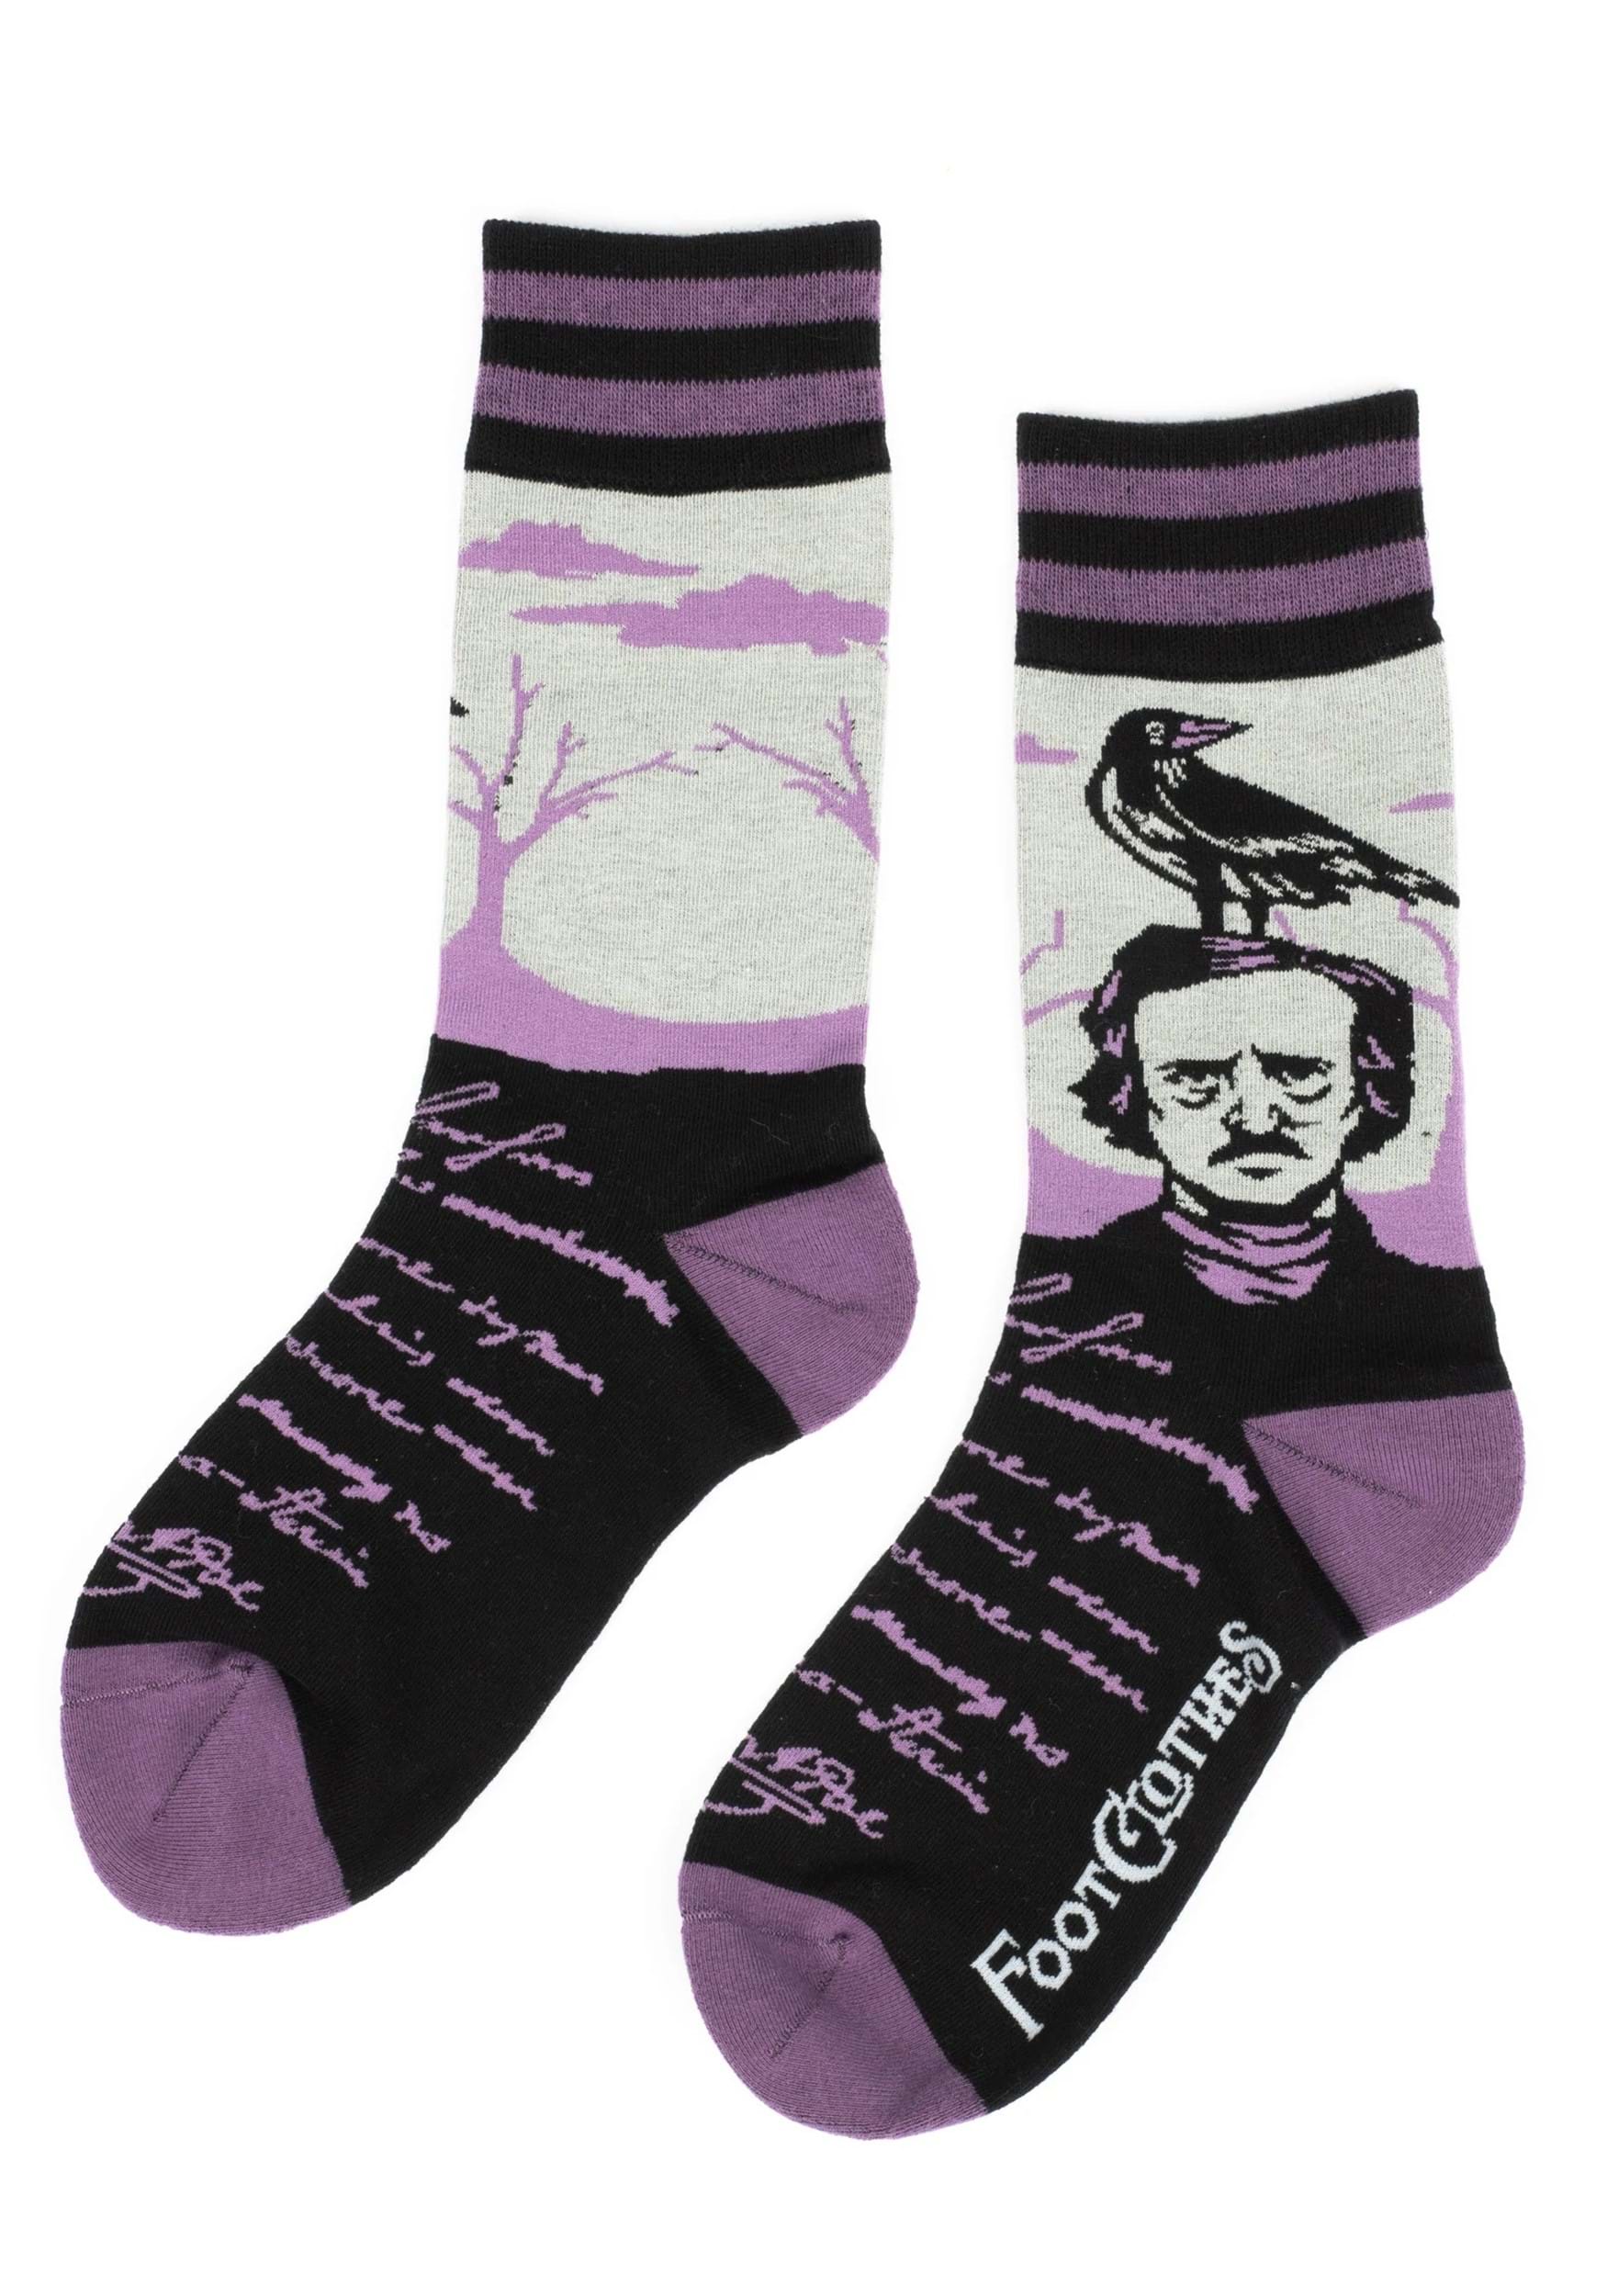 The Raven Edgar Allan Poe Socks